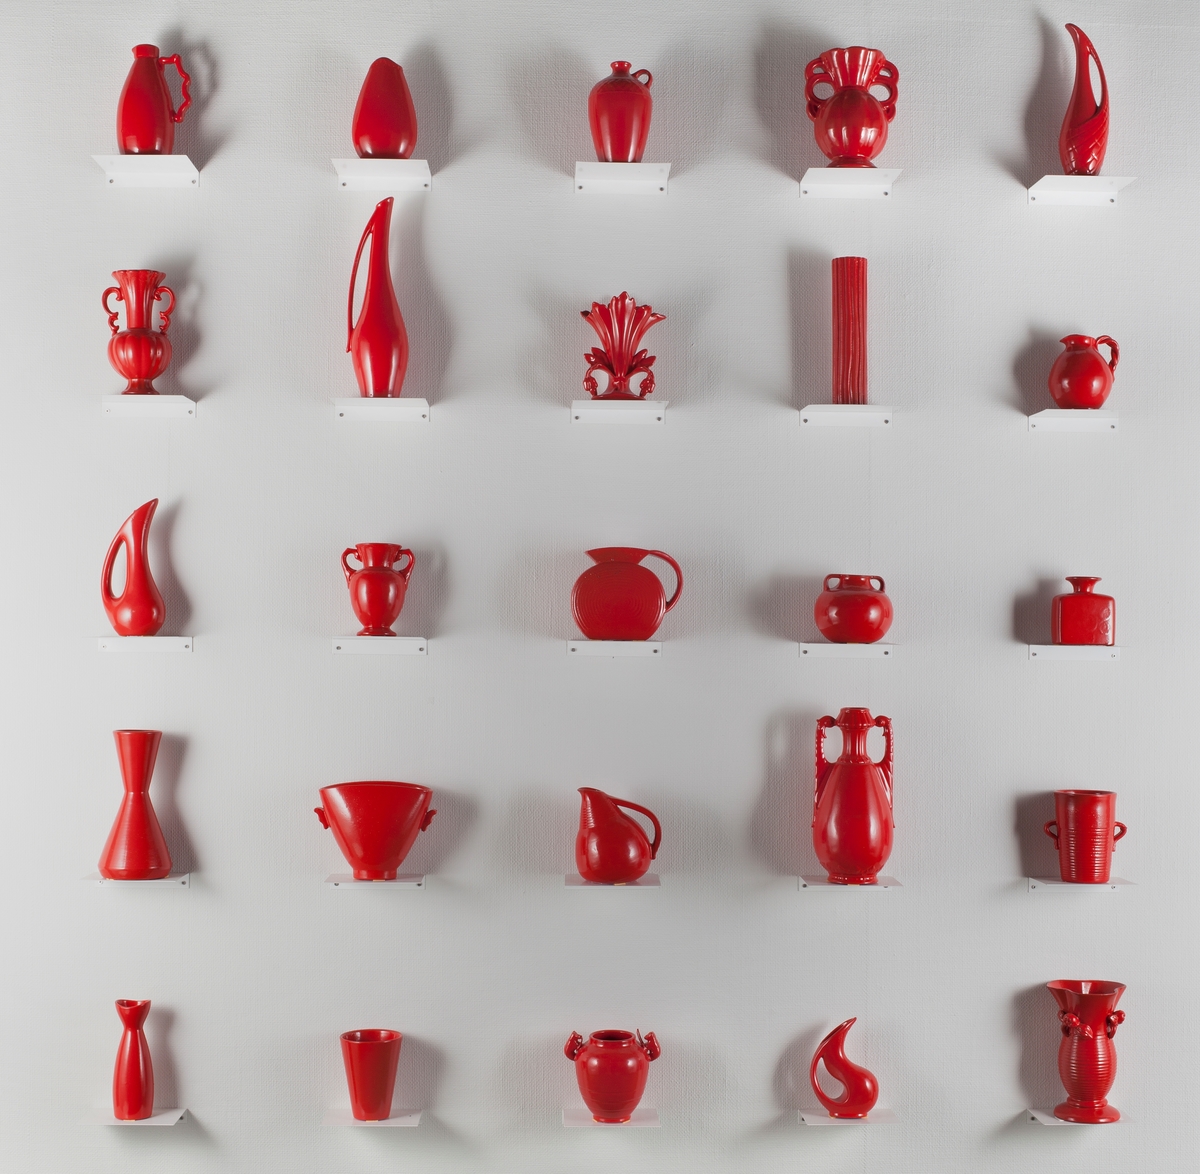 Vegginstallasjonen består av 25 rødlakkerte keramiske vaser i ulike former stående på hver sin metallhylle. Vasene er readymades, altså funnede objekter, som kunstneren har brennlakkert. Transformasjonen gjør at kun vaseformene står igjen, mens individuell glasur, farge og eventuelt motiv er gjemt bak den nye, monokrome, blanke overflaten. Alle vasene har ulik form, og viser formmessig tilbake til flere tusen år med kunst- og designhistorie - feks til de klassiske greske amforaene. I følge kunstneren er de faktiske objektene funnet i antikvitetsbutikker og loppemarkeder, og er antakelig laget i løpet av de siste 100 år.